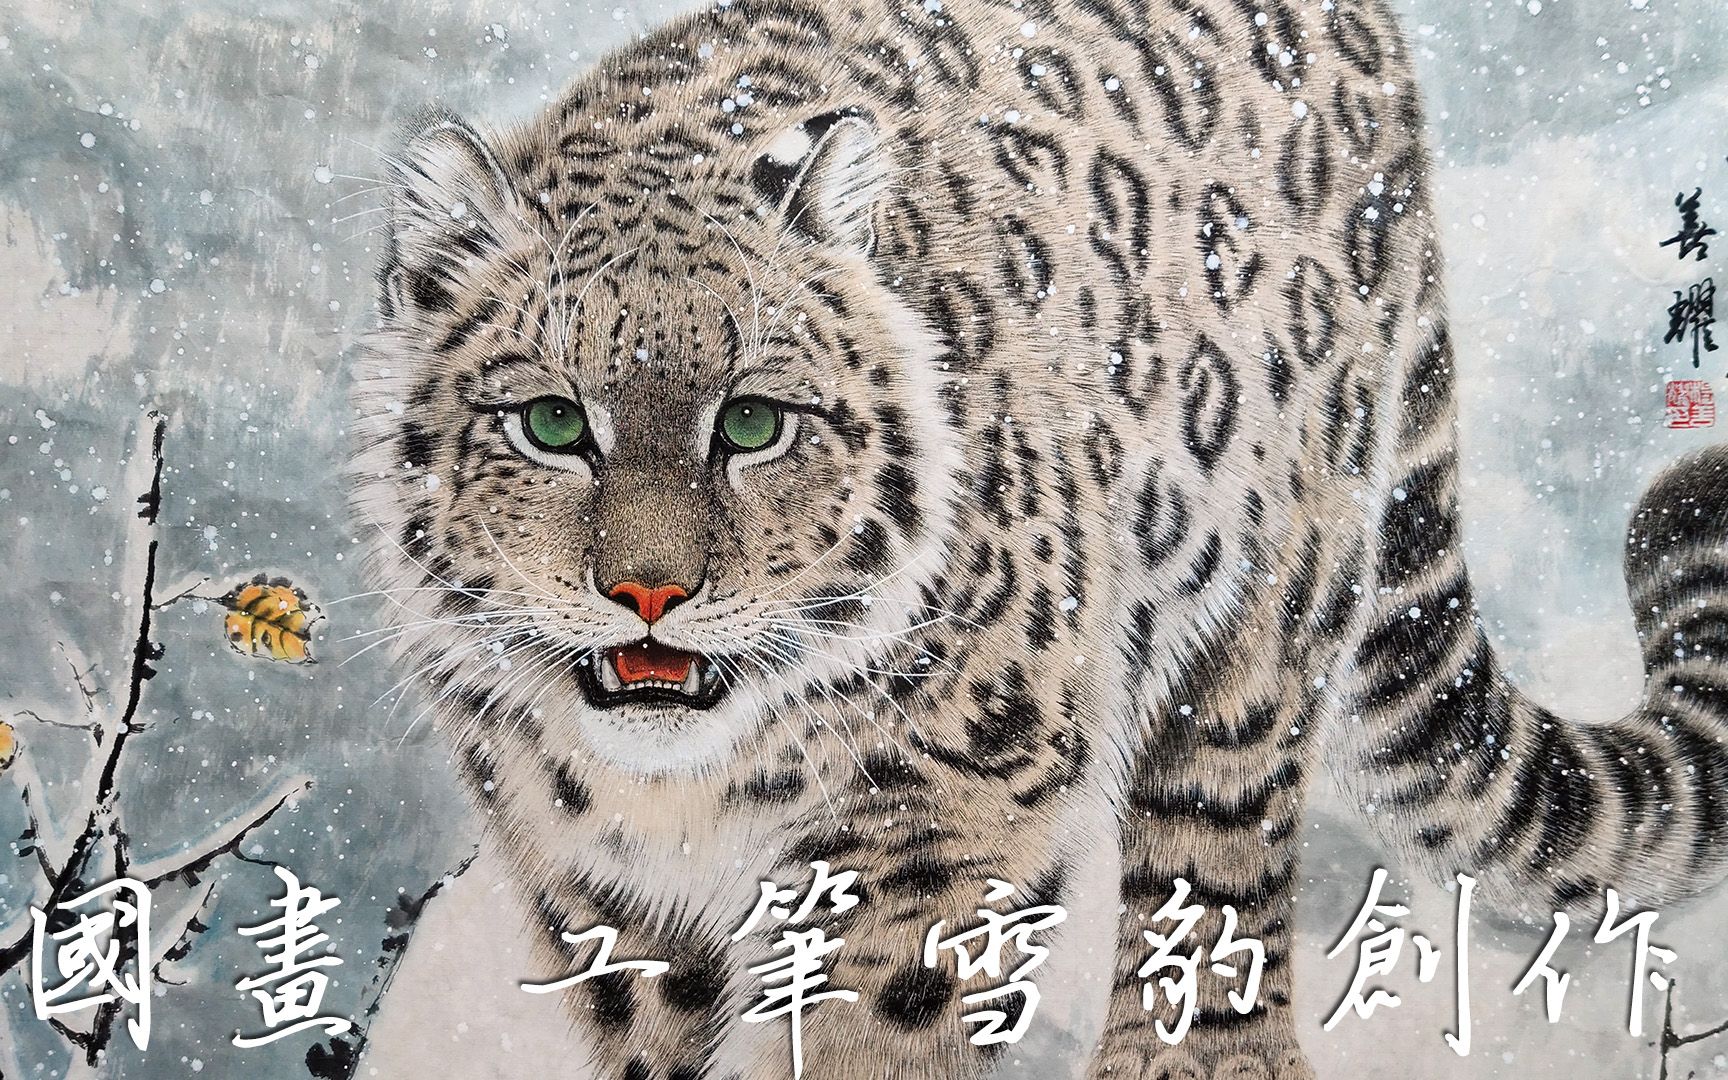 传统中国画水墨画工笔画雪豹创作过程杨善耀